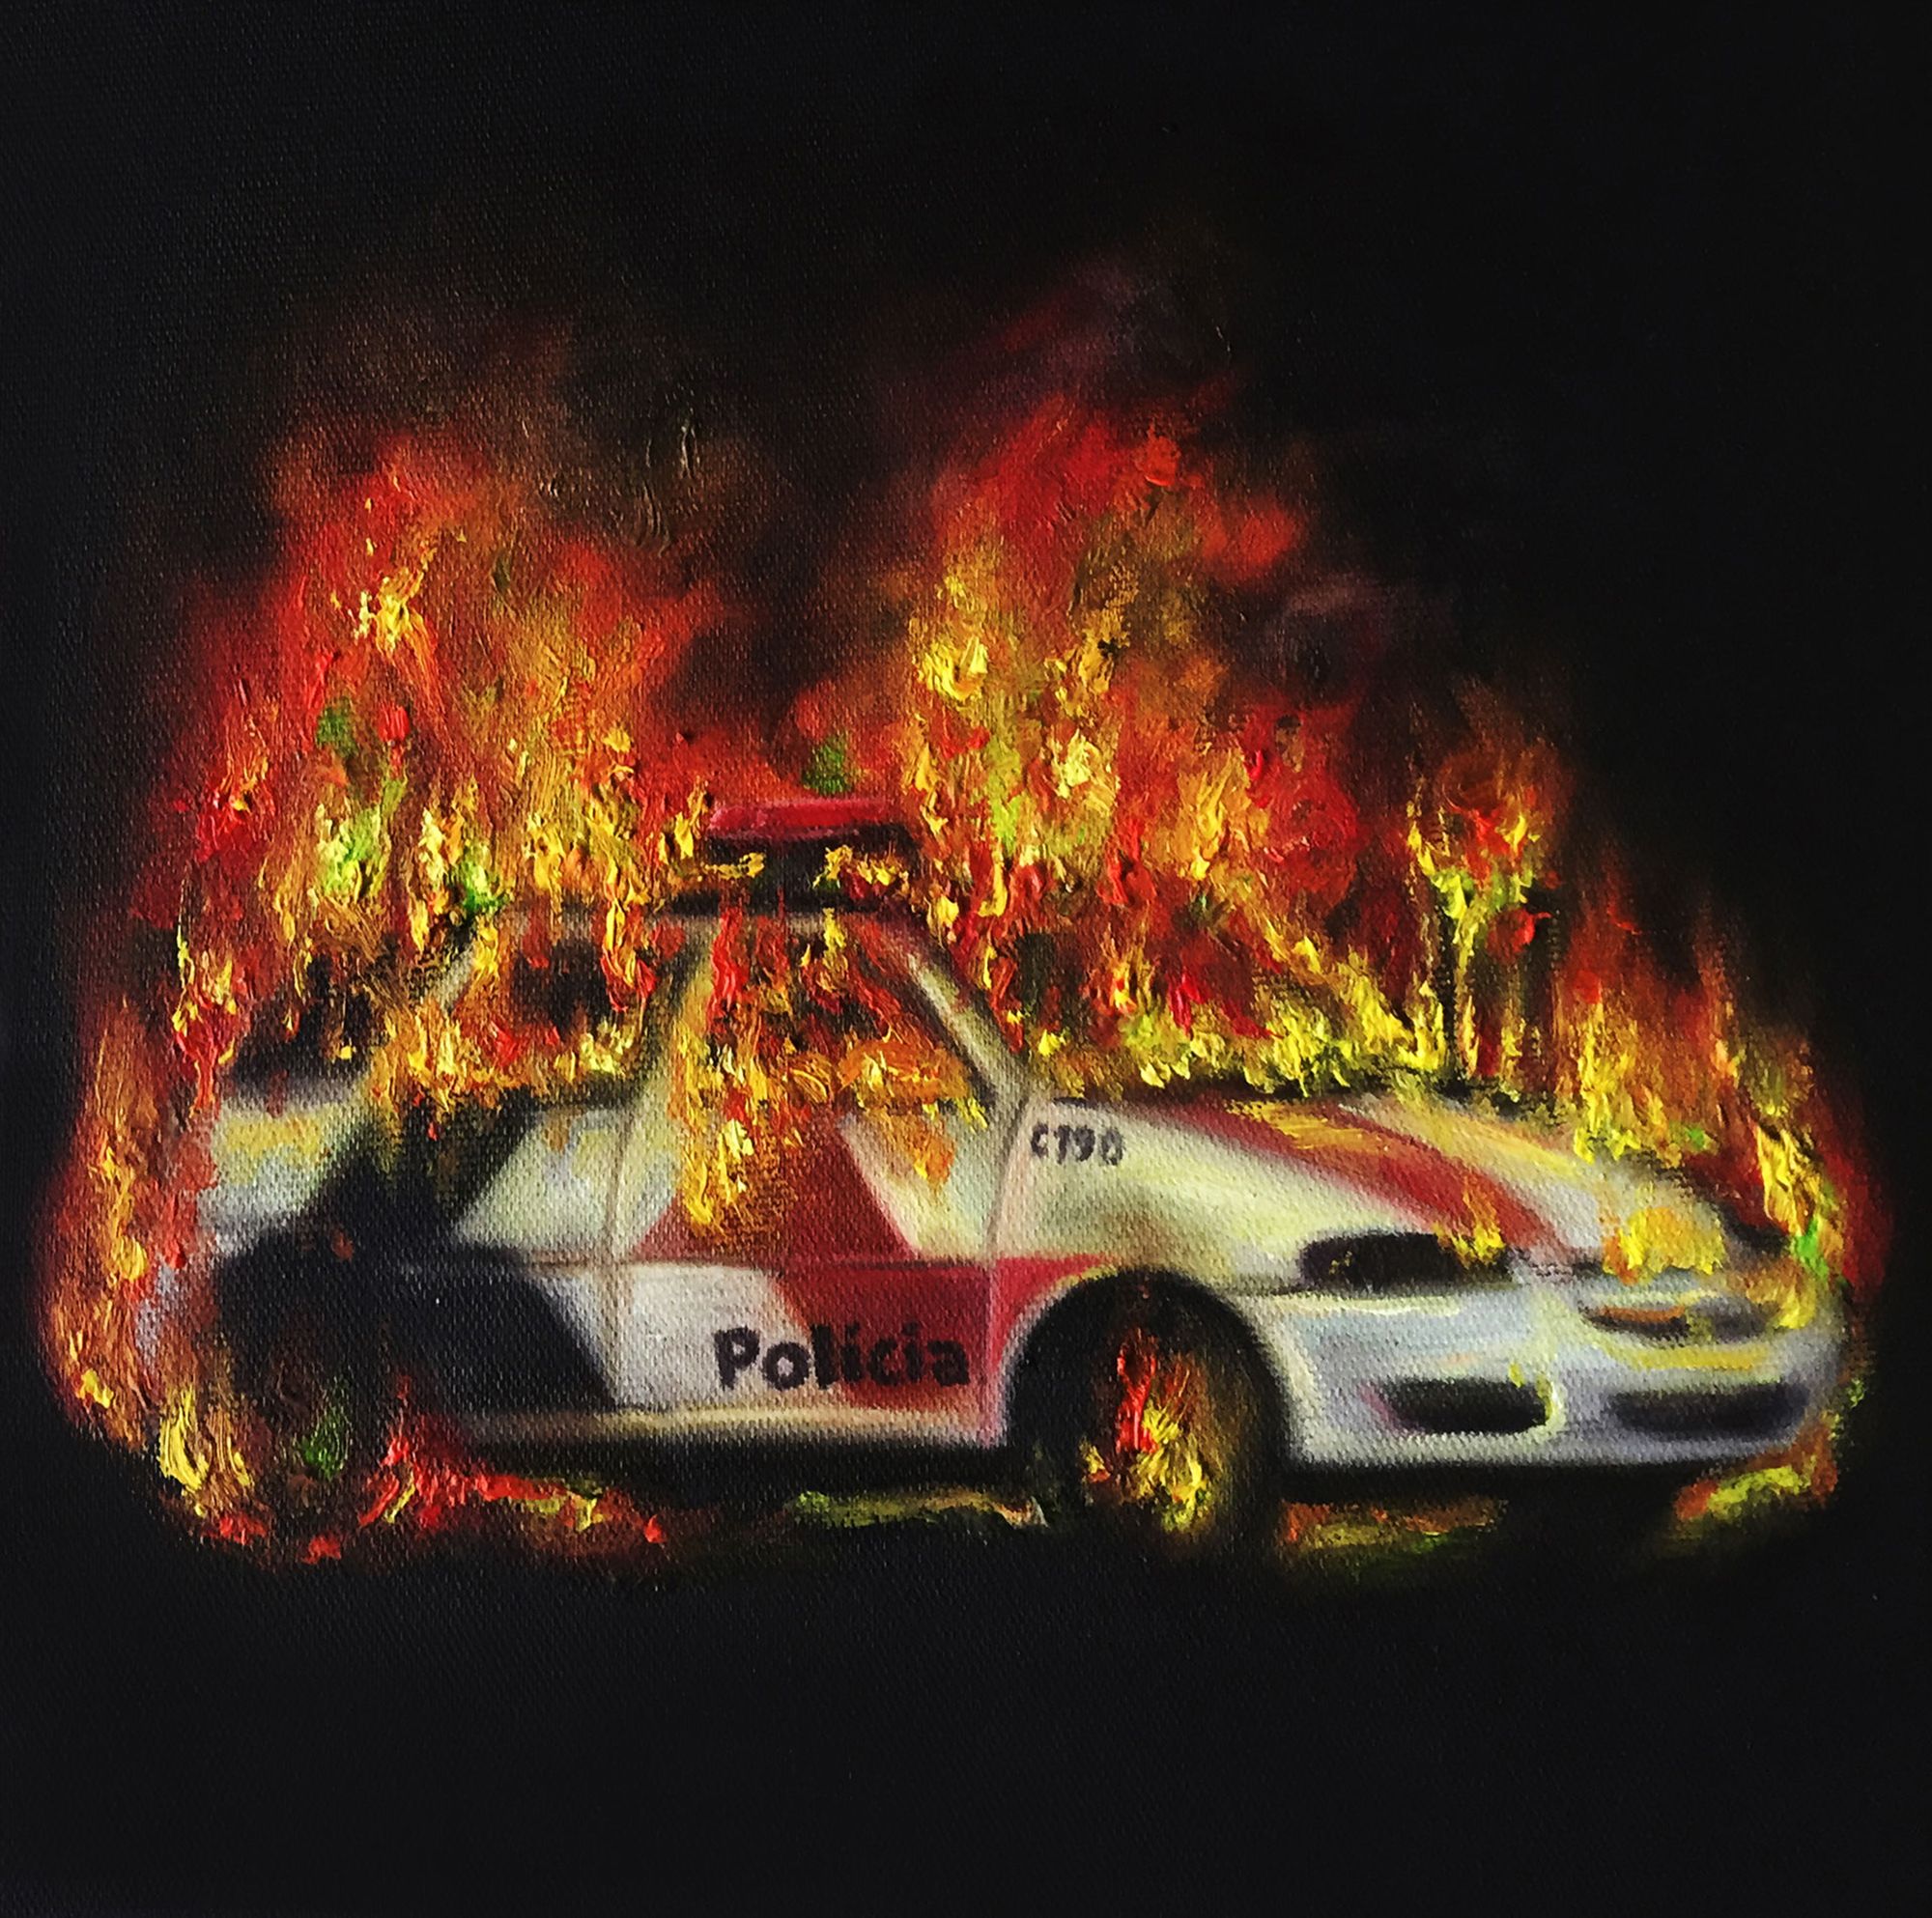 A pintura mostra a imagem de um carro policial incendiado, sobre fundo preto a luz emana do fogo, o carro é de cor branca preta e vermelha, pode se ler a palavra “Polícia” na porta do carro, a pintura faz alusão às manifestações e protestos populares em diversos lugares do mundo.